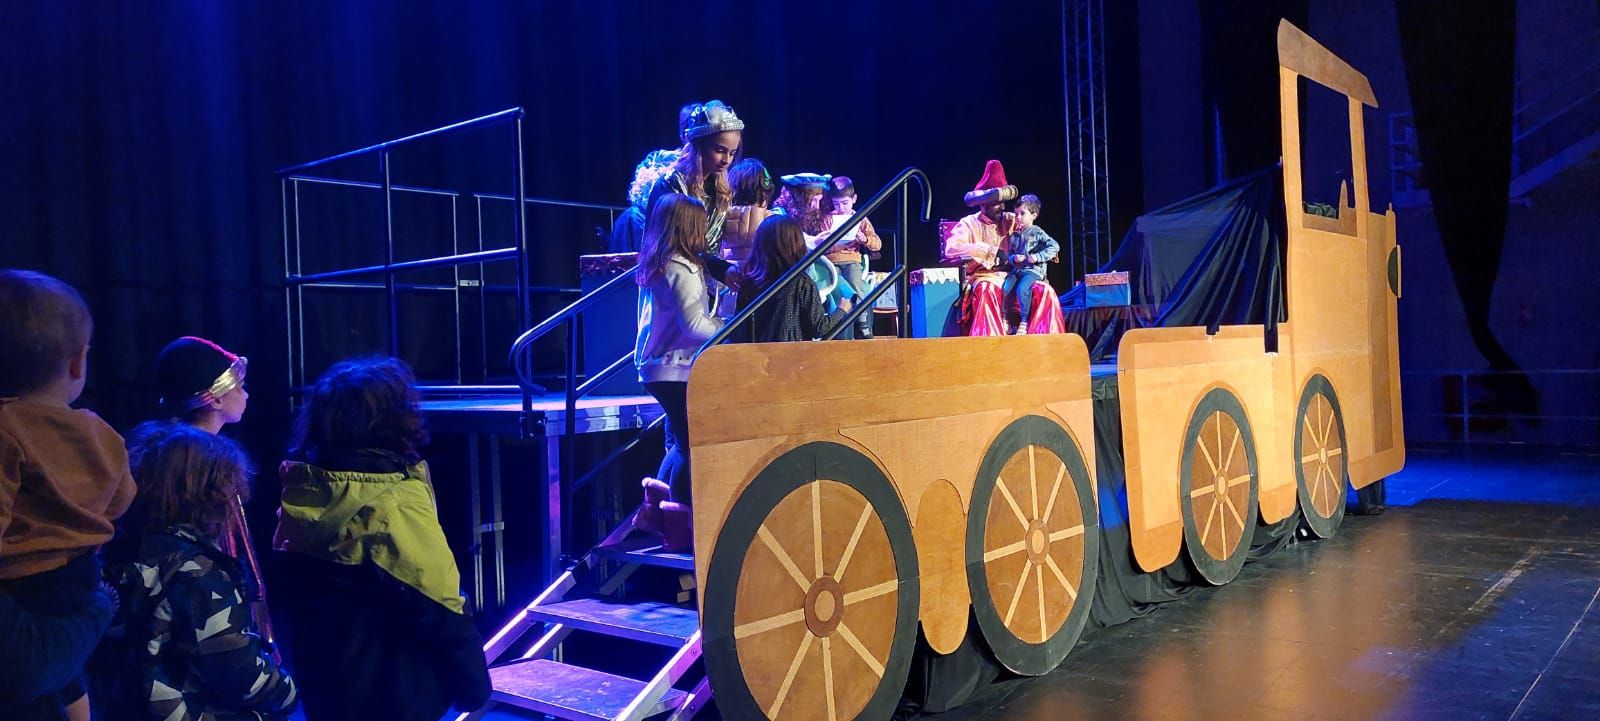 Els patges reials arriben a Solsona acompanyats per un espectacle infantil